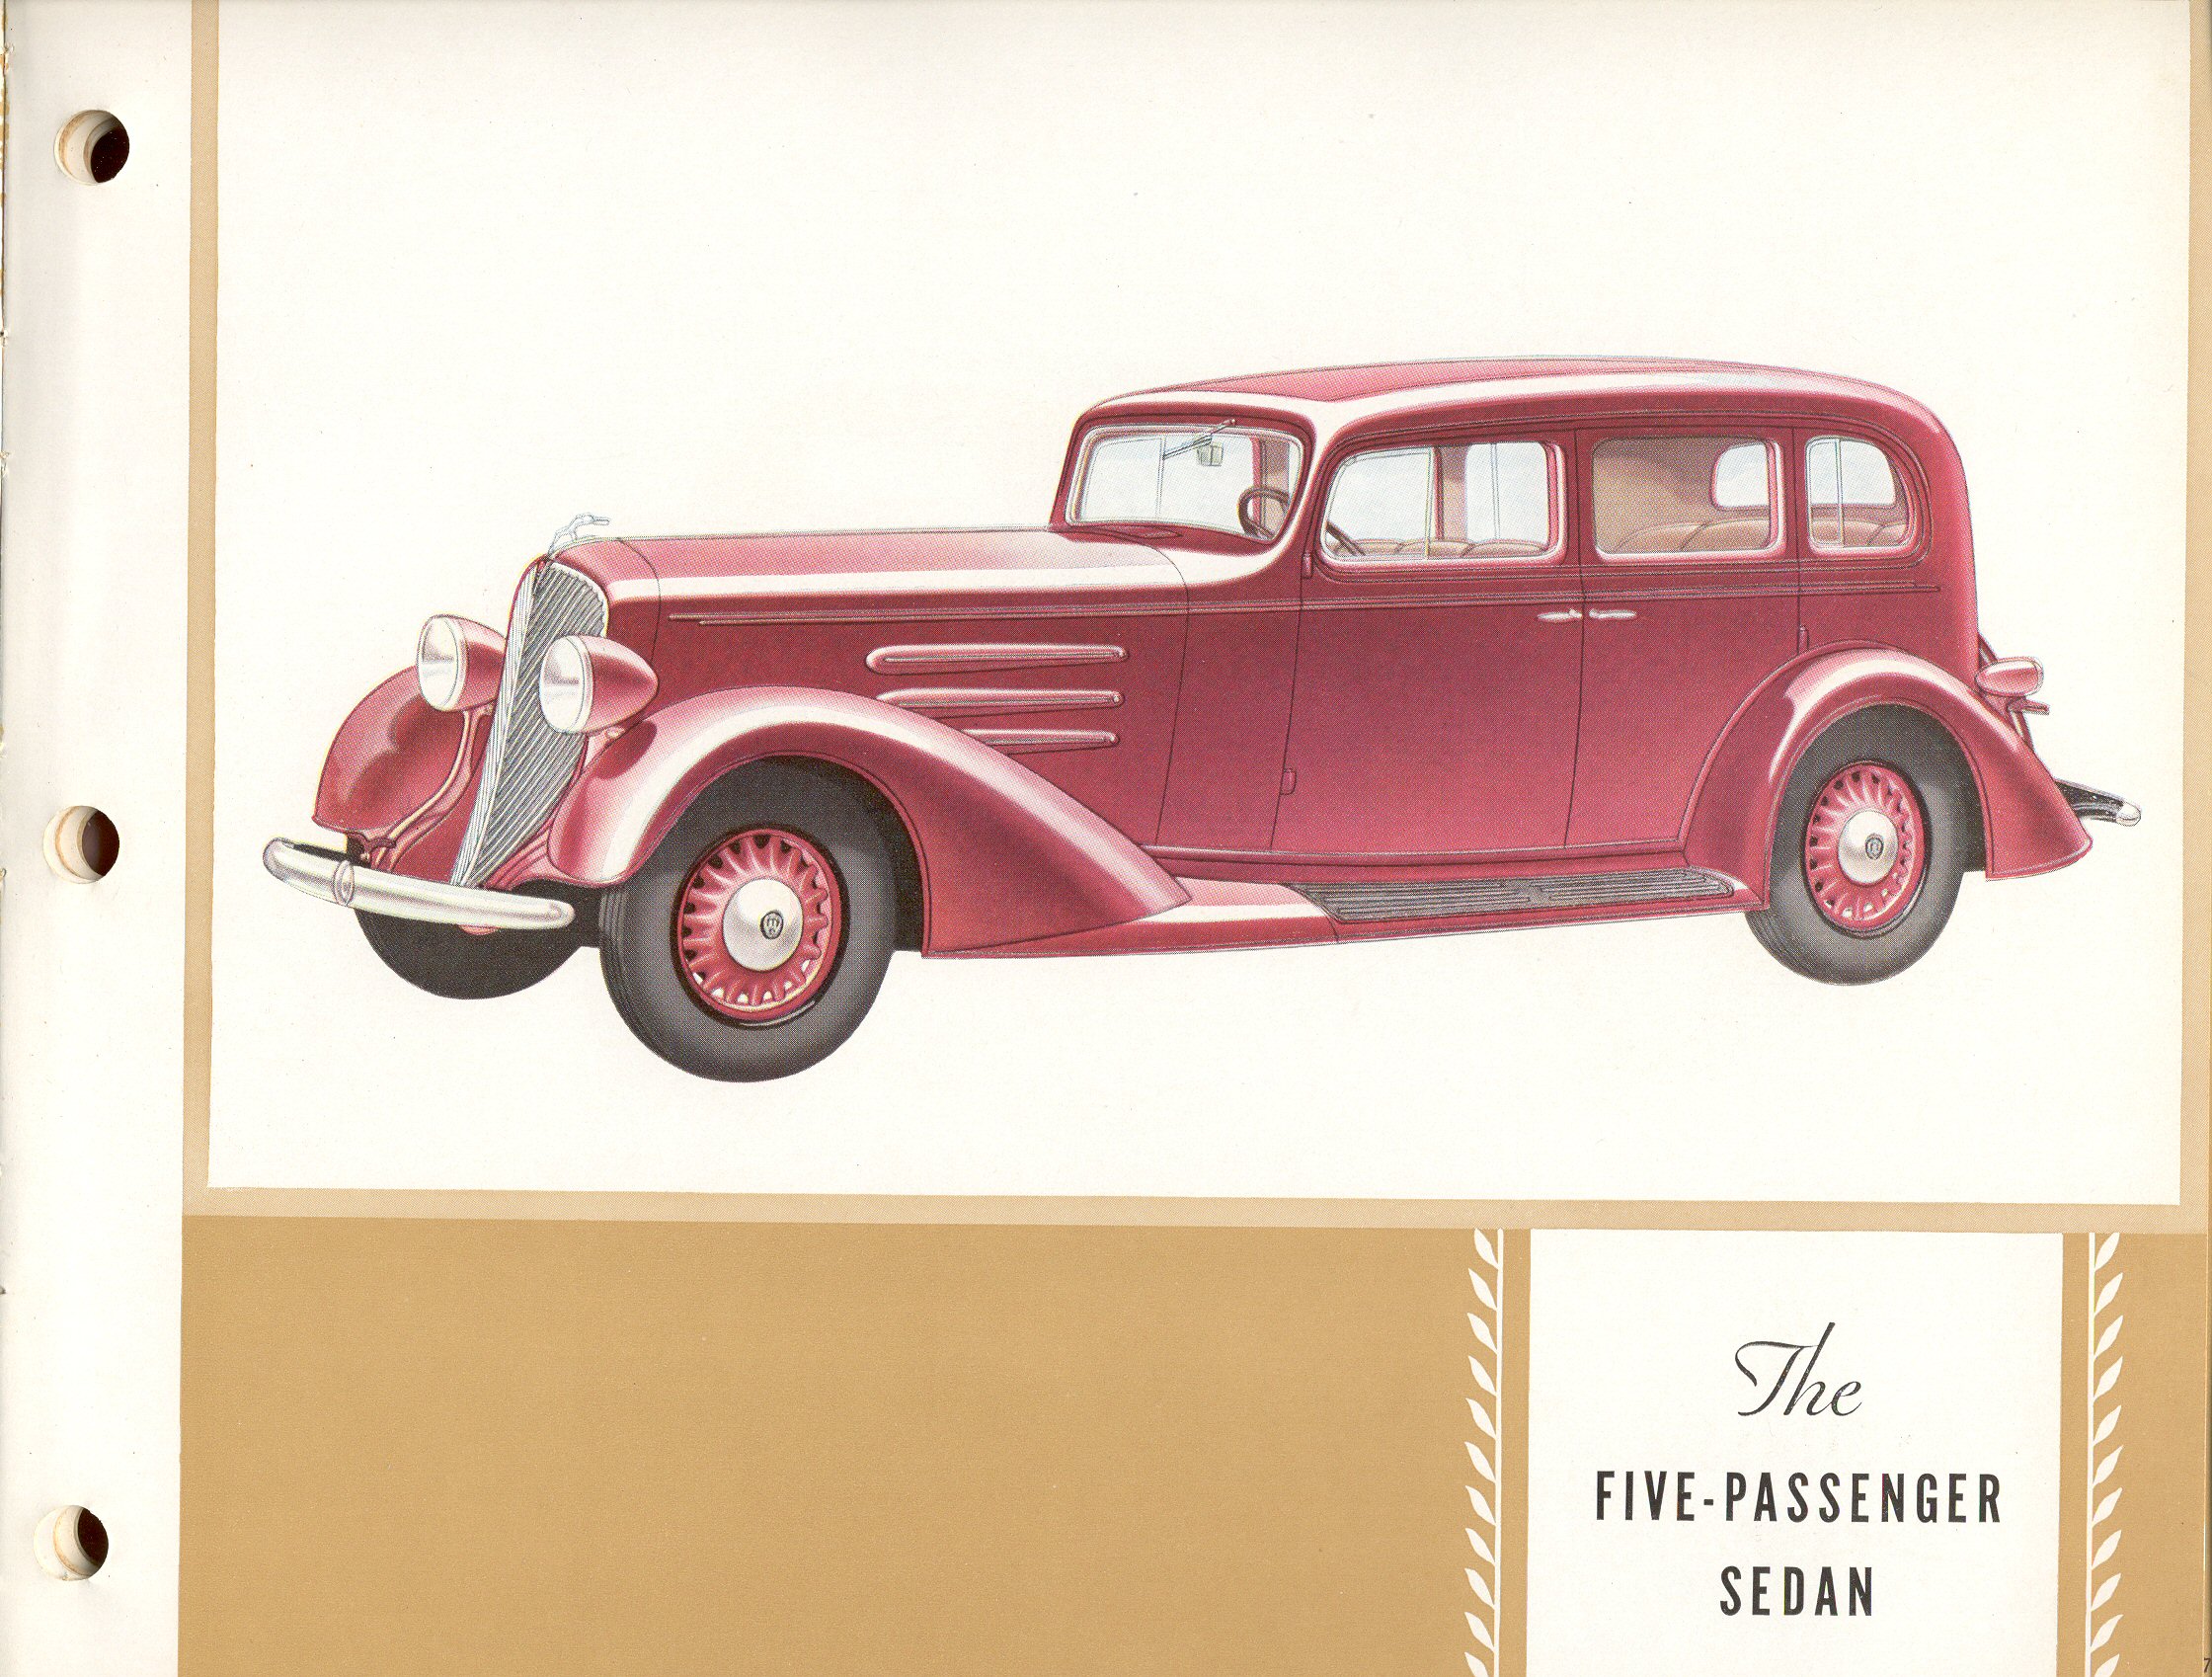 1933 Oldsmobile Booklet-51